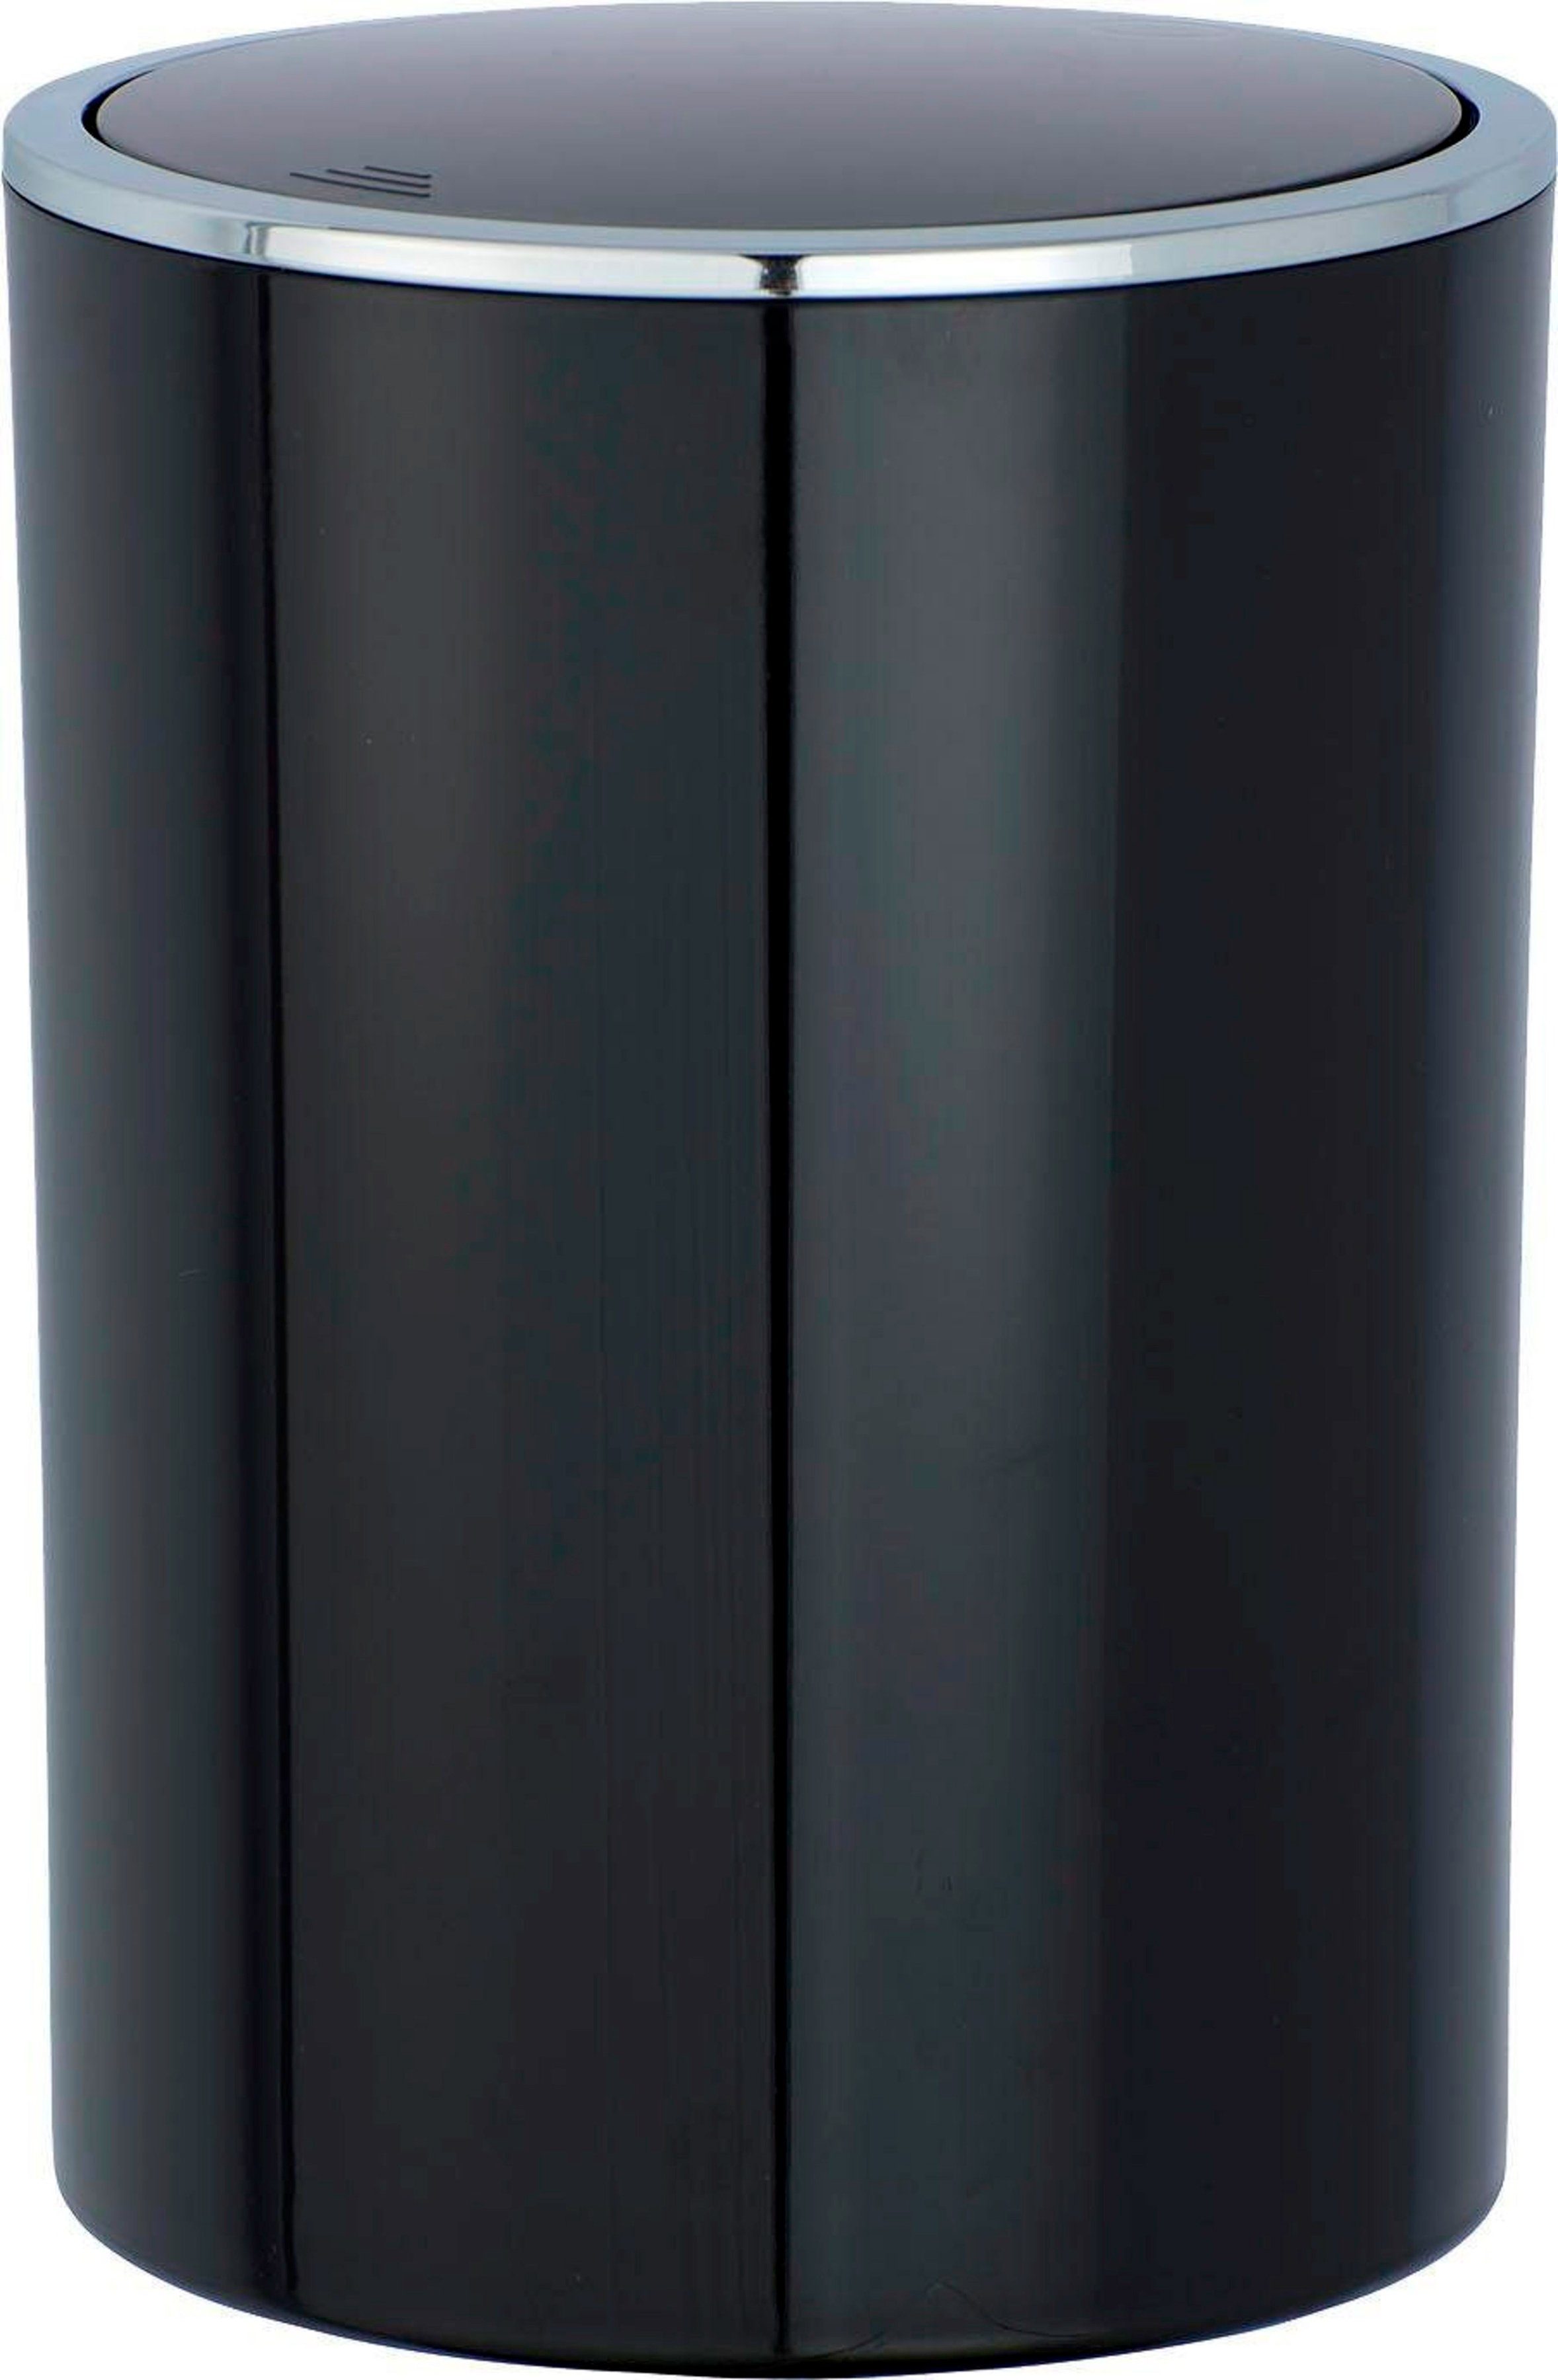 WENKO Mülleimer Inca, 5 Liter schwarz/chromfarben